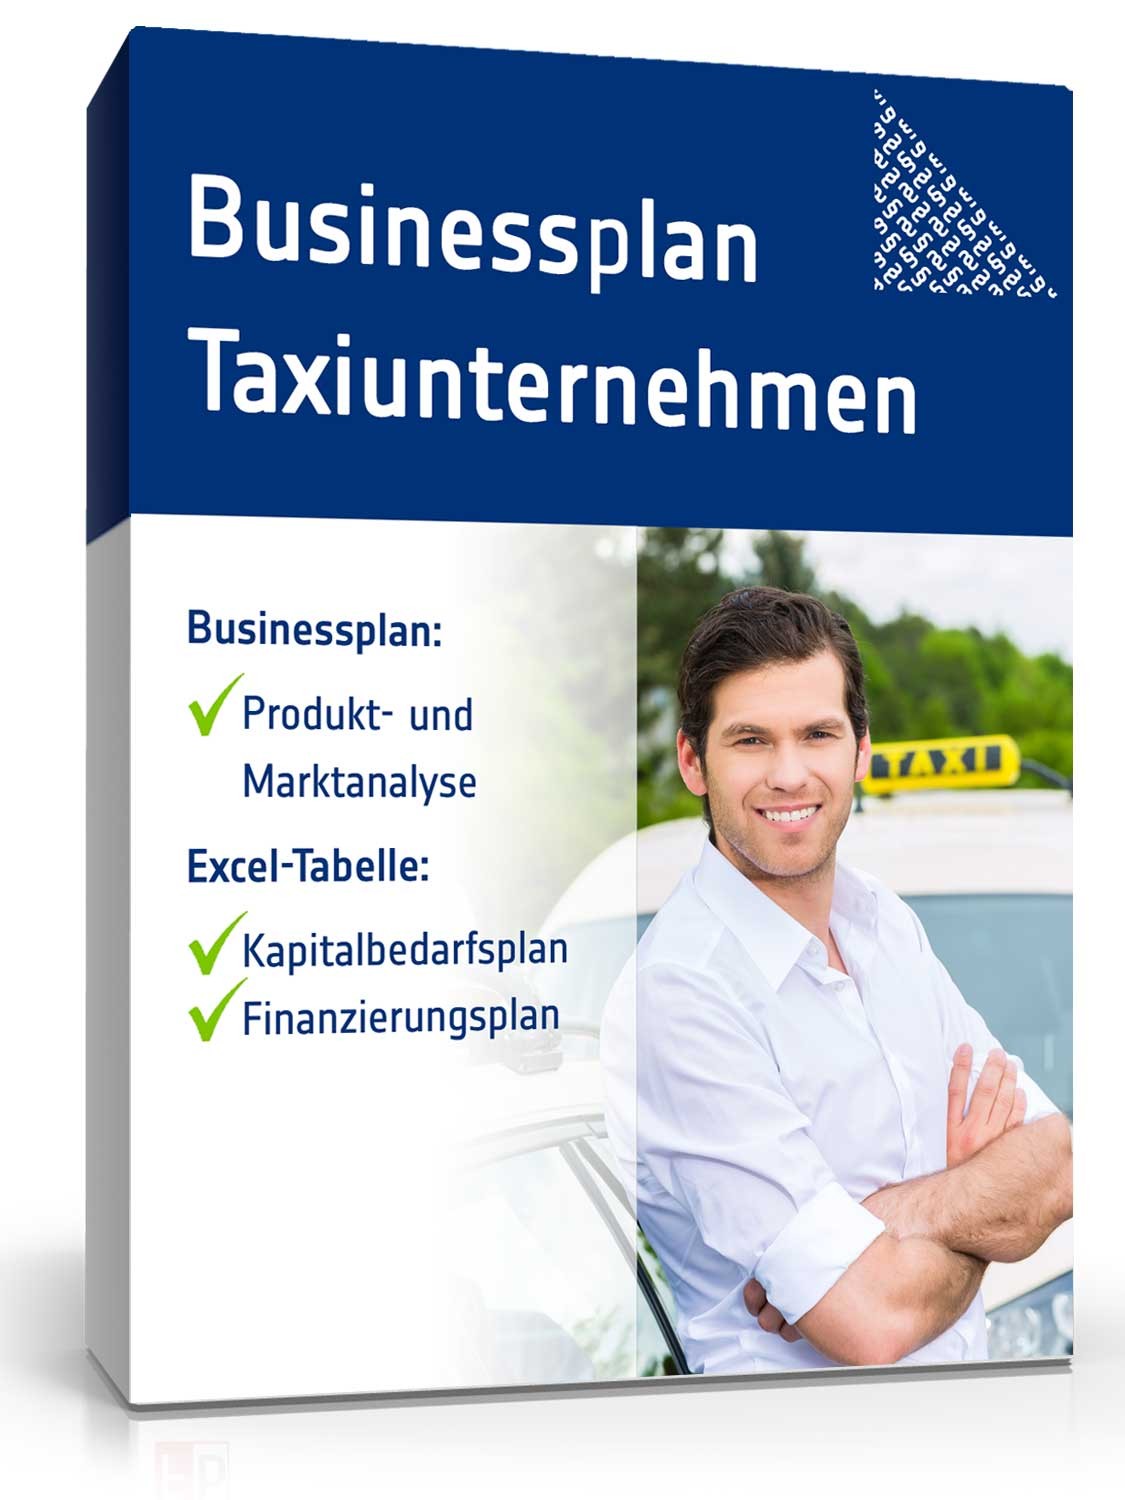 Hauptbild des Produkts: Businessplan Taxi-Unternehmer